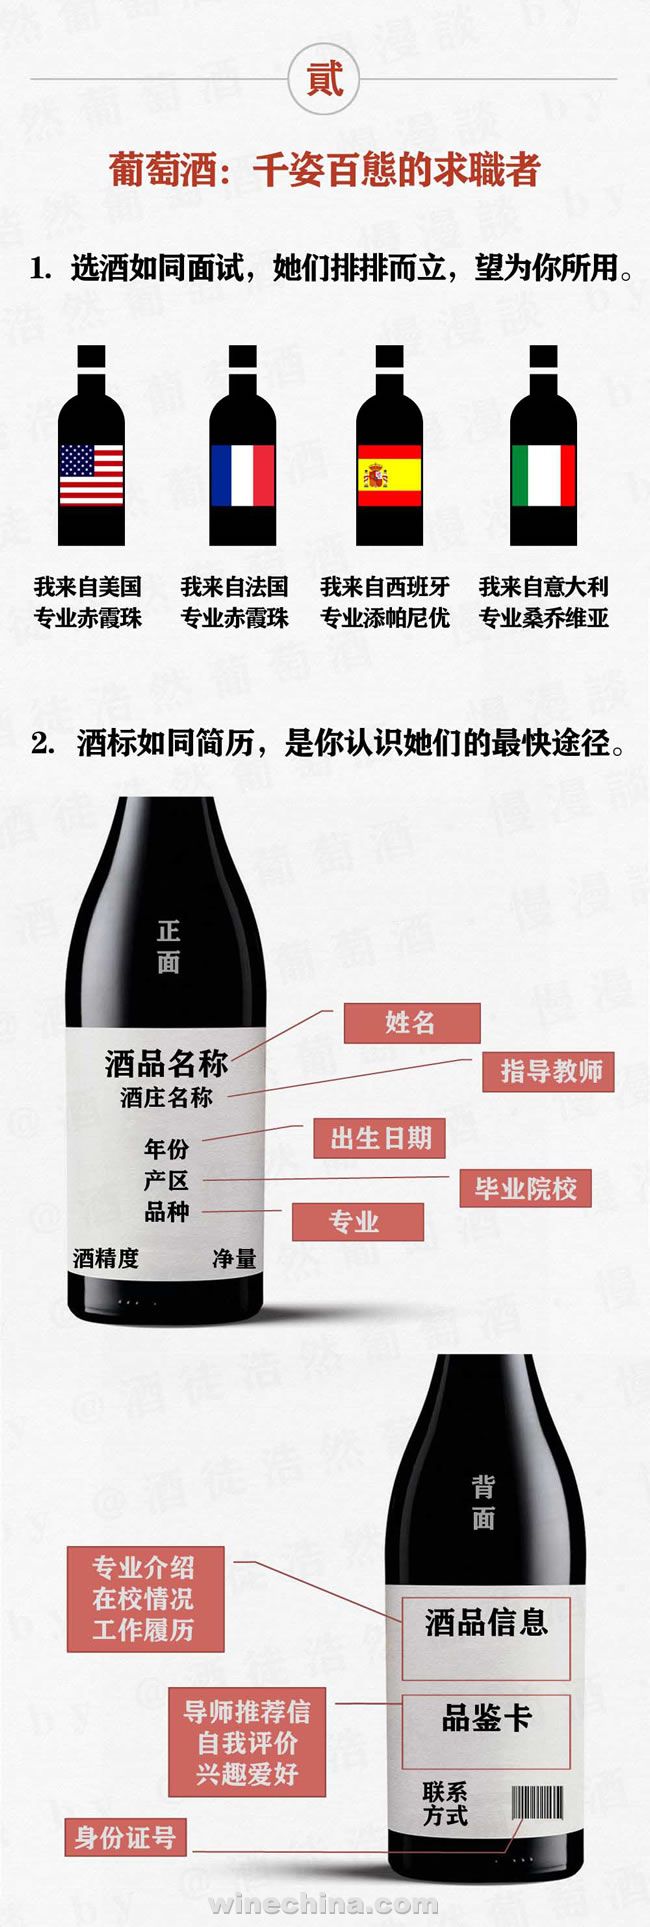 图文全解 搞定西班牙葡萄酒酒标密码-中国葡萄